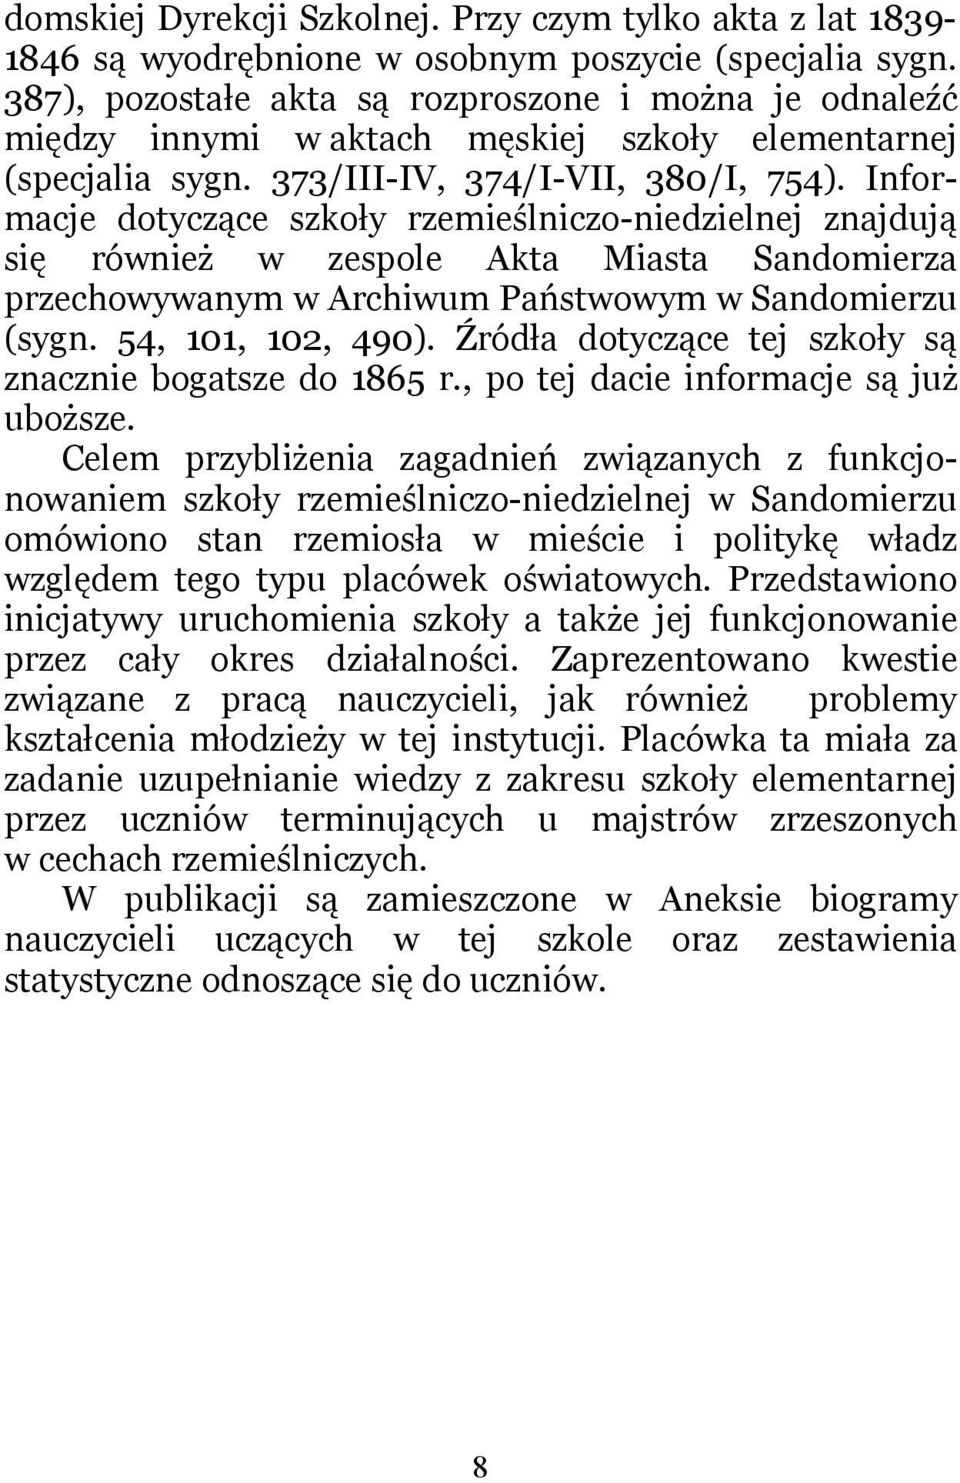 Informacje dotyczące szkoły rzemieślniczo-niedzielnej znajdują się również w zespole Akta Miasta Sandomierza przechowywanym w Archiwum Państwowym w Sandomierzu (sygn. 54, 101, 102, 490).